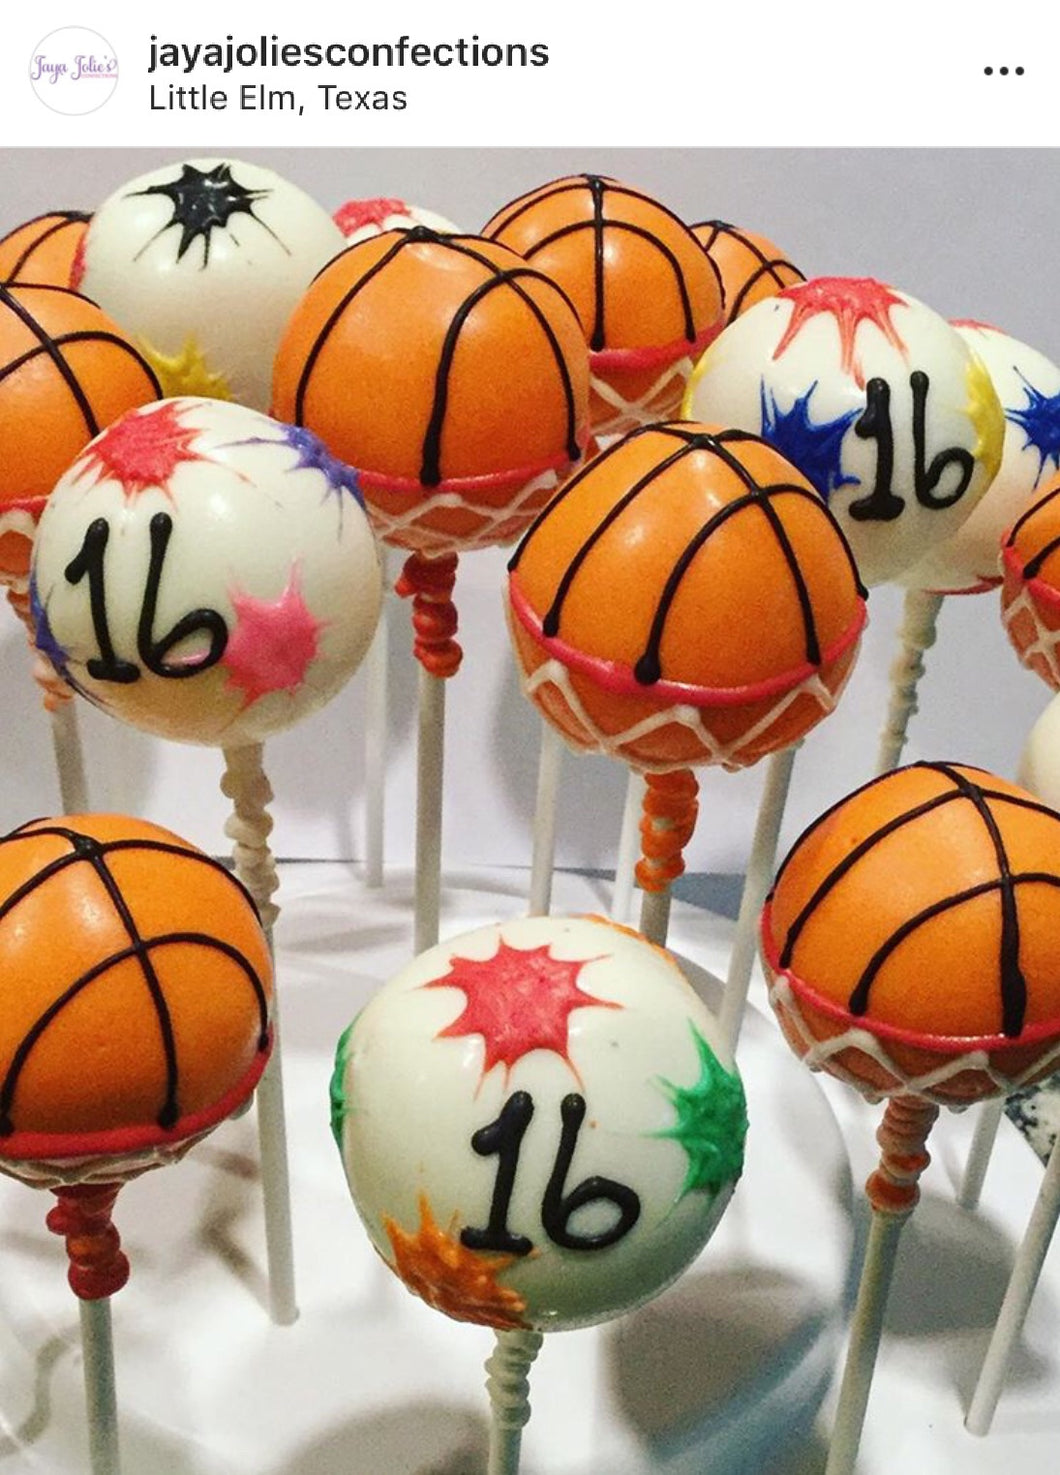 Specialty Basketball Cake Pops - price per item